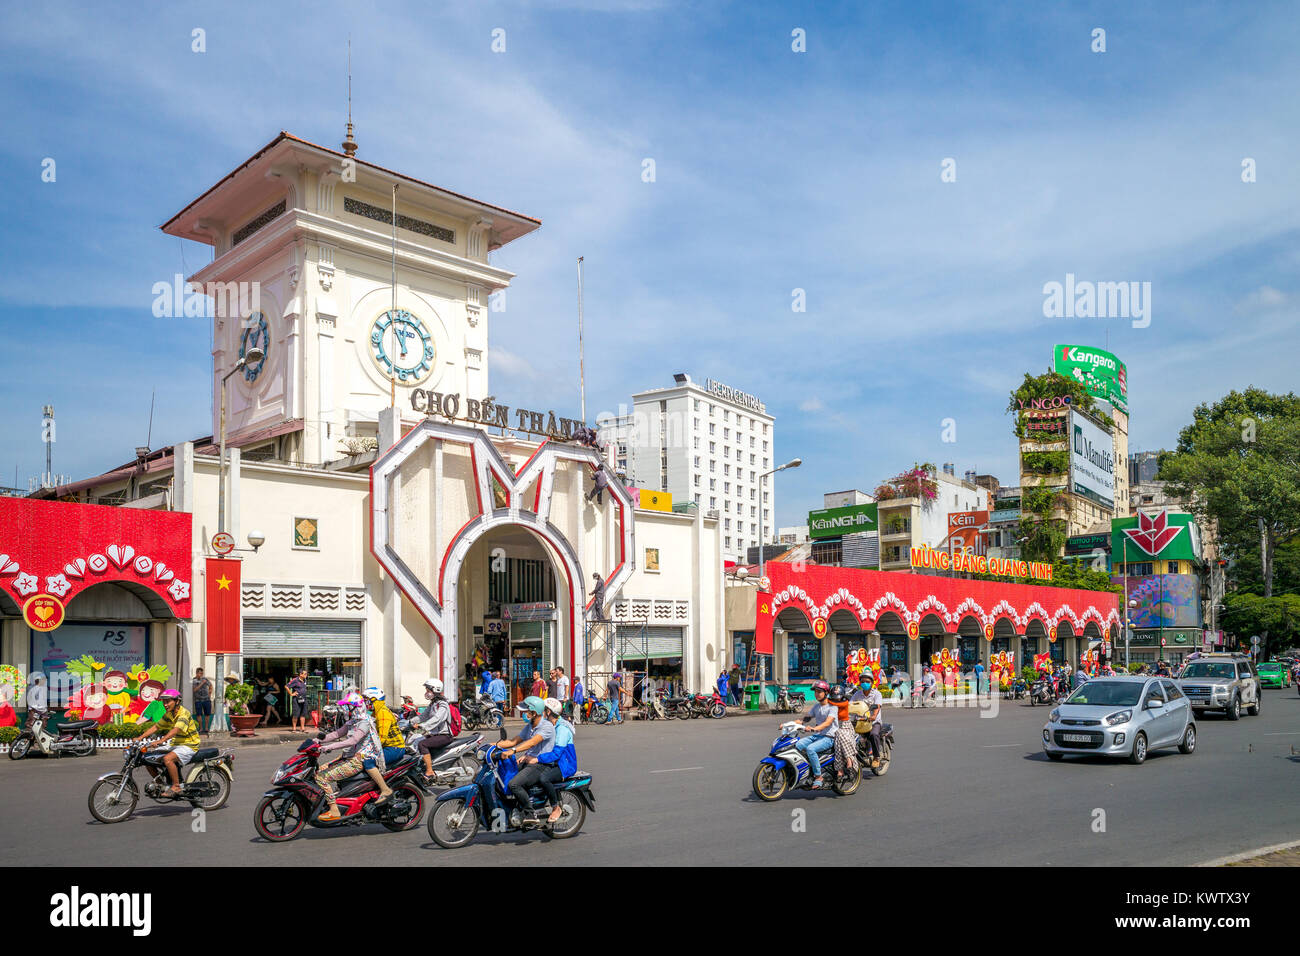 The entrance of Saigon Central Market Stock Photo